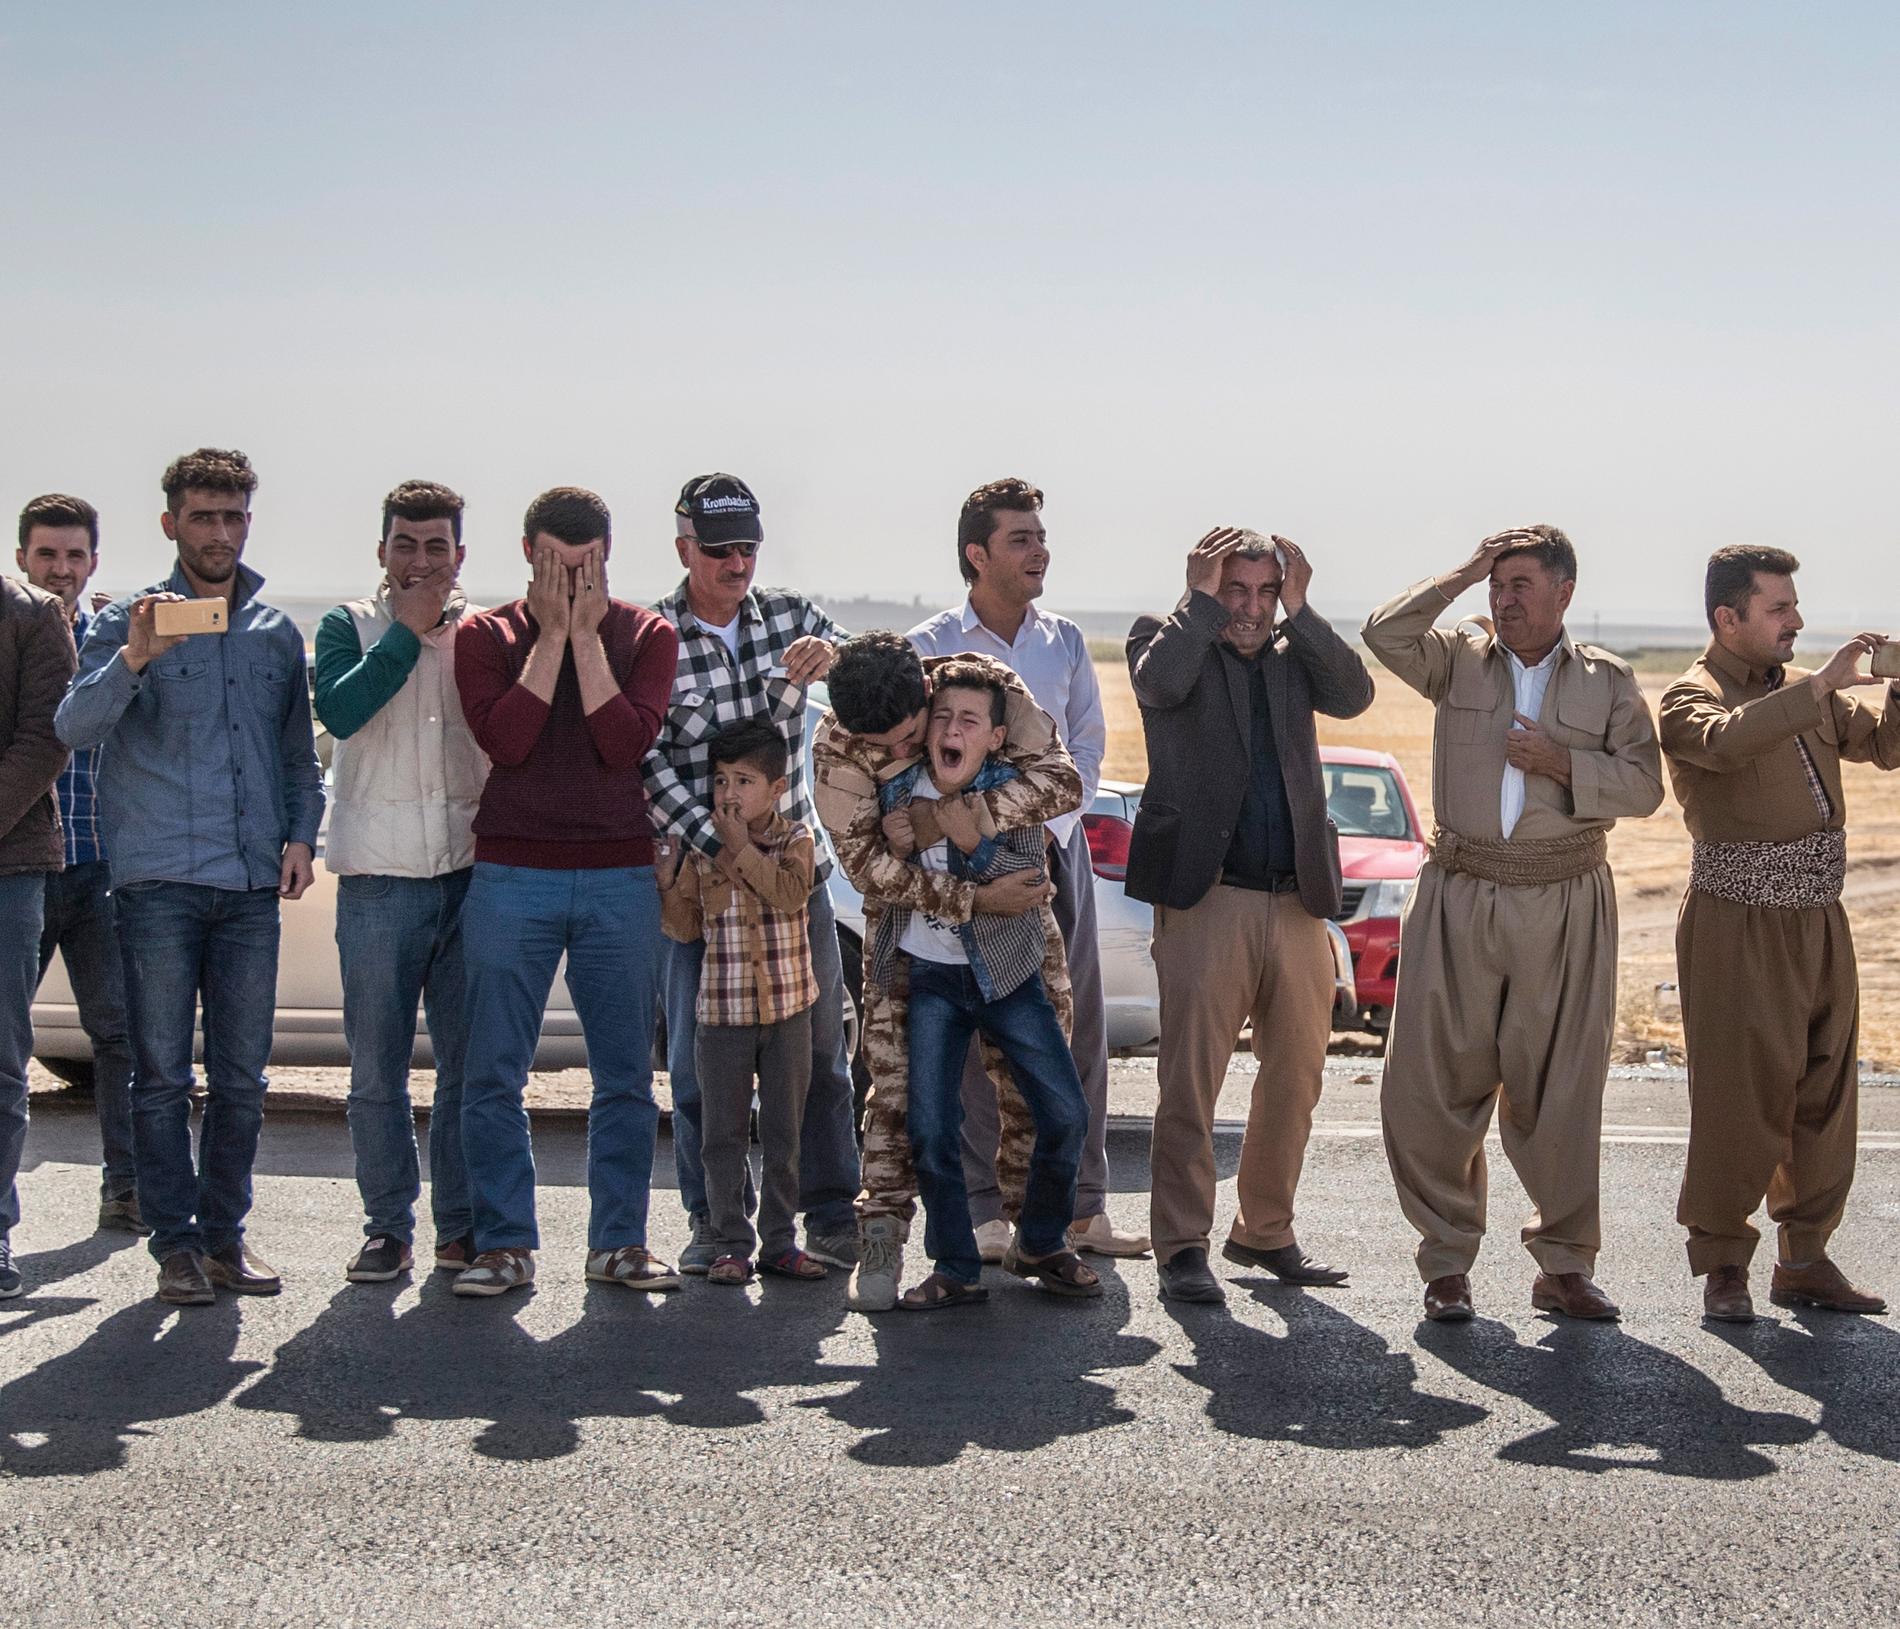 Årets fotograf 2017, Magnus Wennman. Mosul, Irak Oktober 2016. Hundratals människor har samlats längs vägkanten för att hedra fem Peshmerga-soldater som dagen innan dödades av en av IS vägbomber. 11-åriga Lefaw skriker plötsligt och otröstligt när han ser bilden på sin pappa monterad längst fram på ambulansen som passerar. Fram till nu har han bitit ihop, in i det sista hoppats på att hans pappa fortfarande är i livet. Lillebror Shalew gråter tyst i bakgrunden.